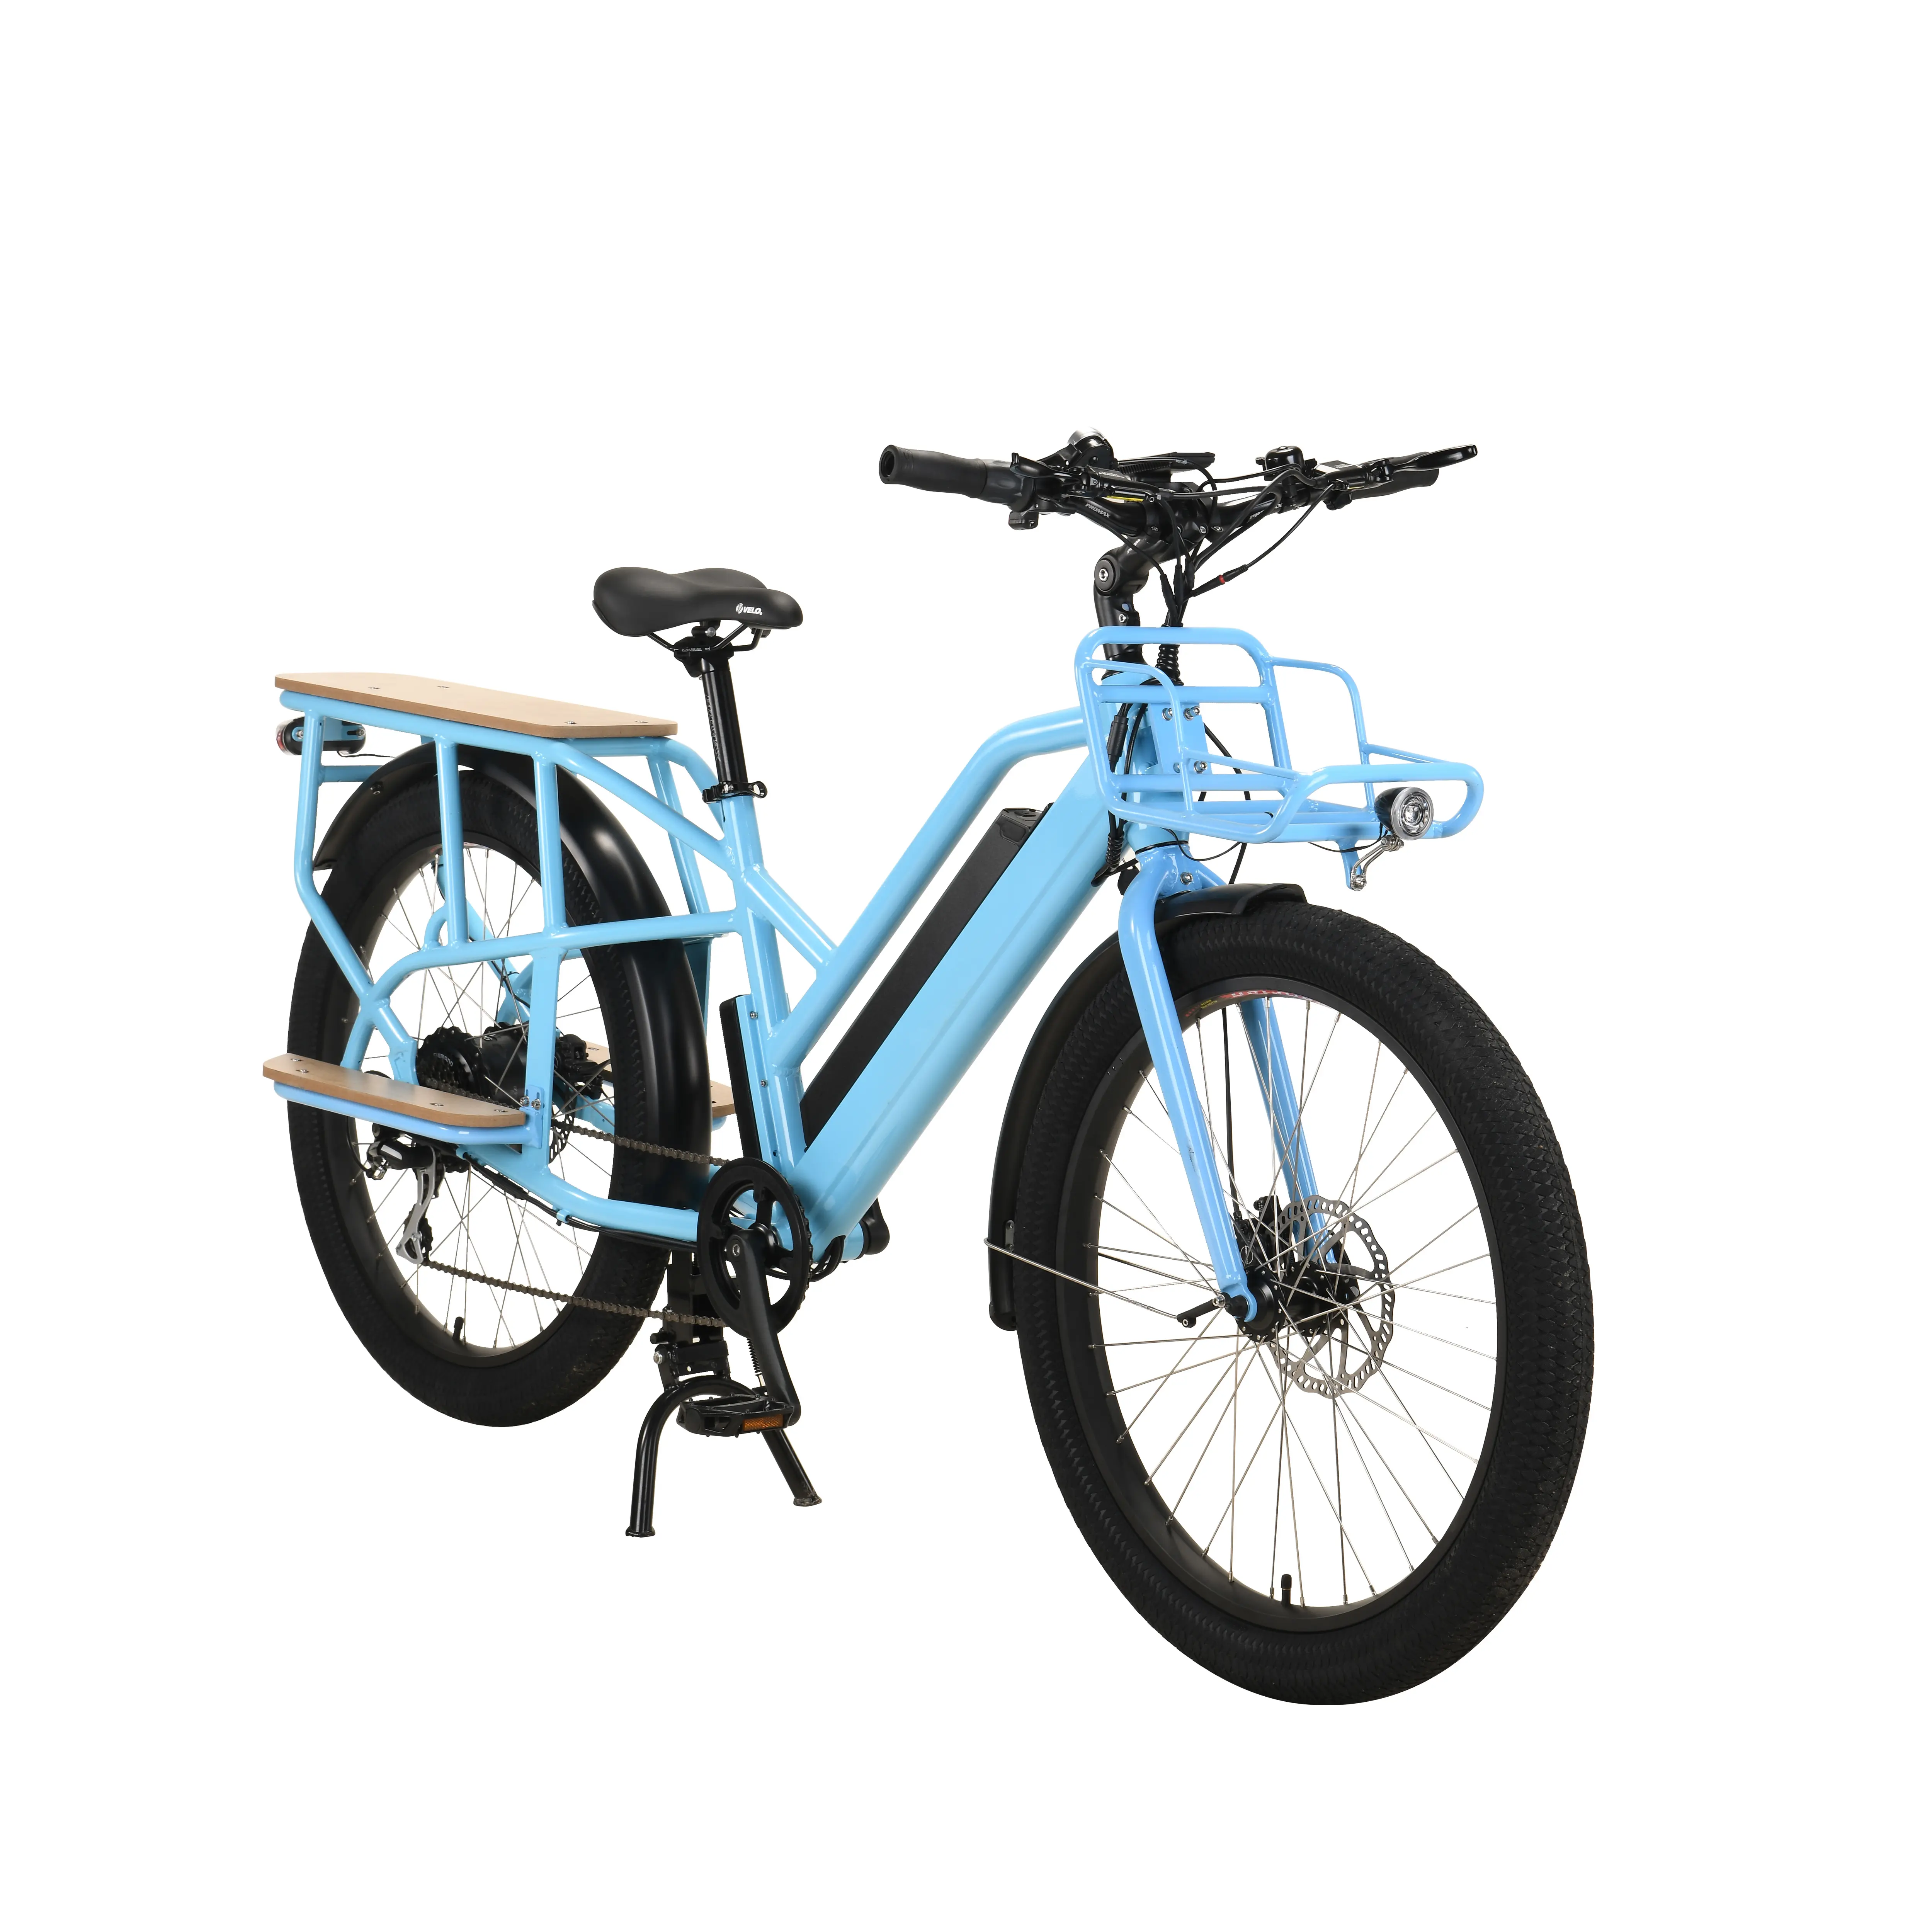 48v500w vélo cargo électrique avec l'affichage d'affichage À CRISTAUX LIQUIDES famille ebike fabriqué en chine vélo usine